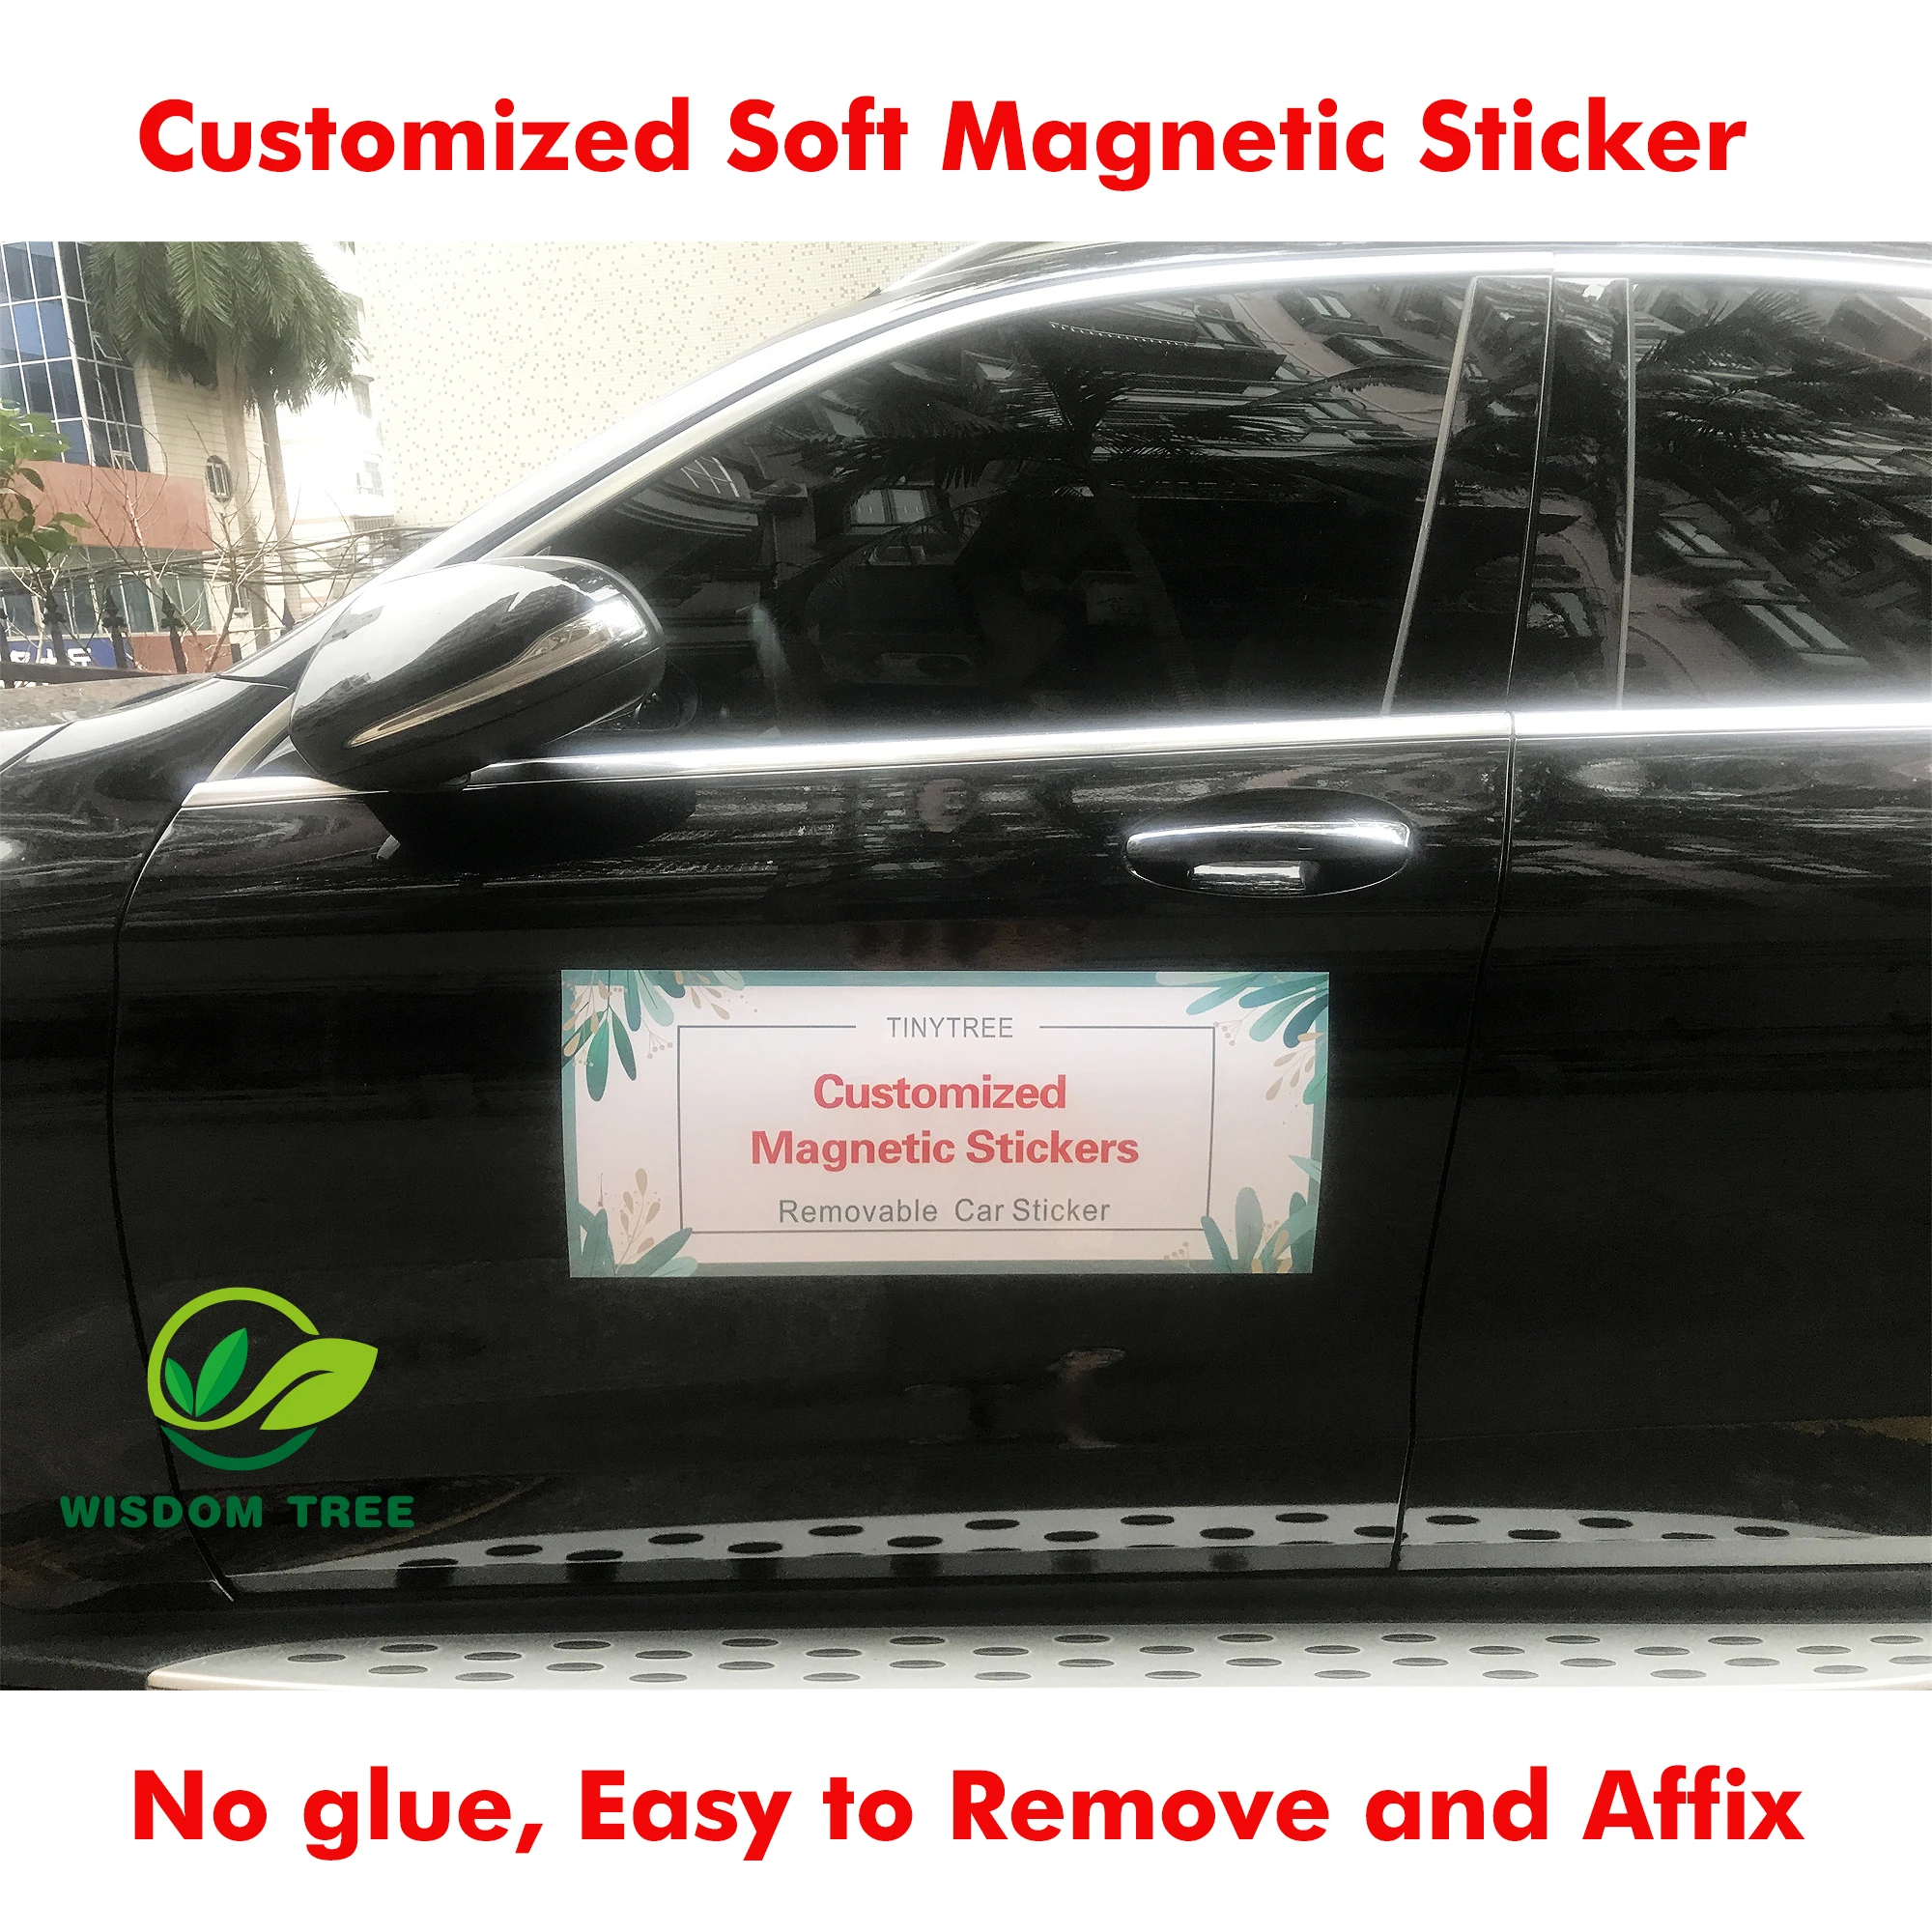 Adesivi magnetici personalizzati per superfici metalliche e auto